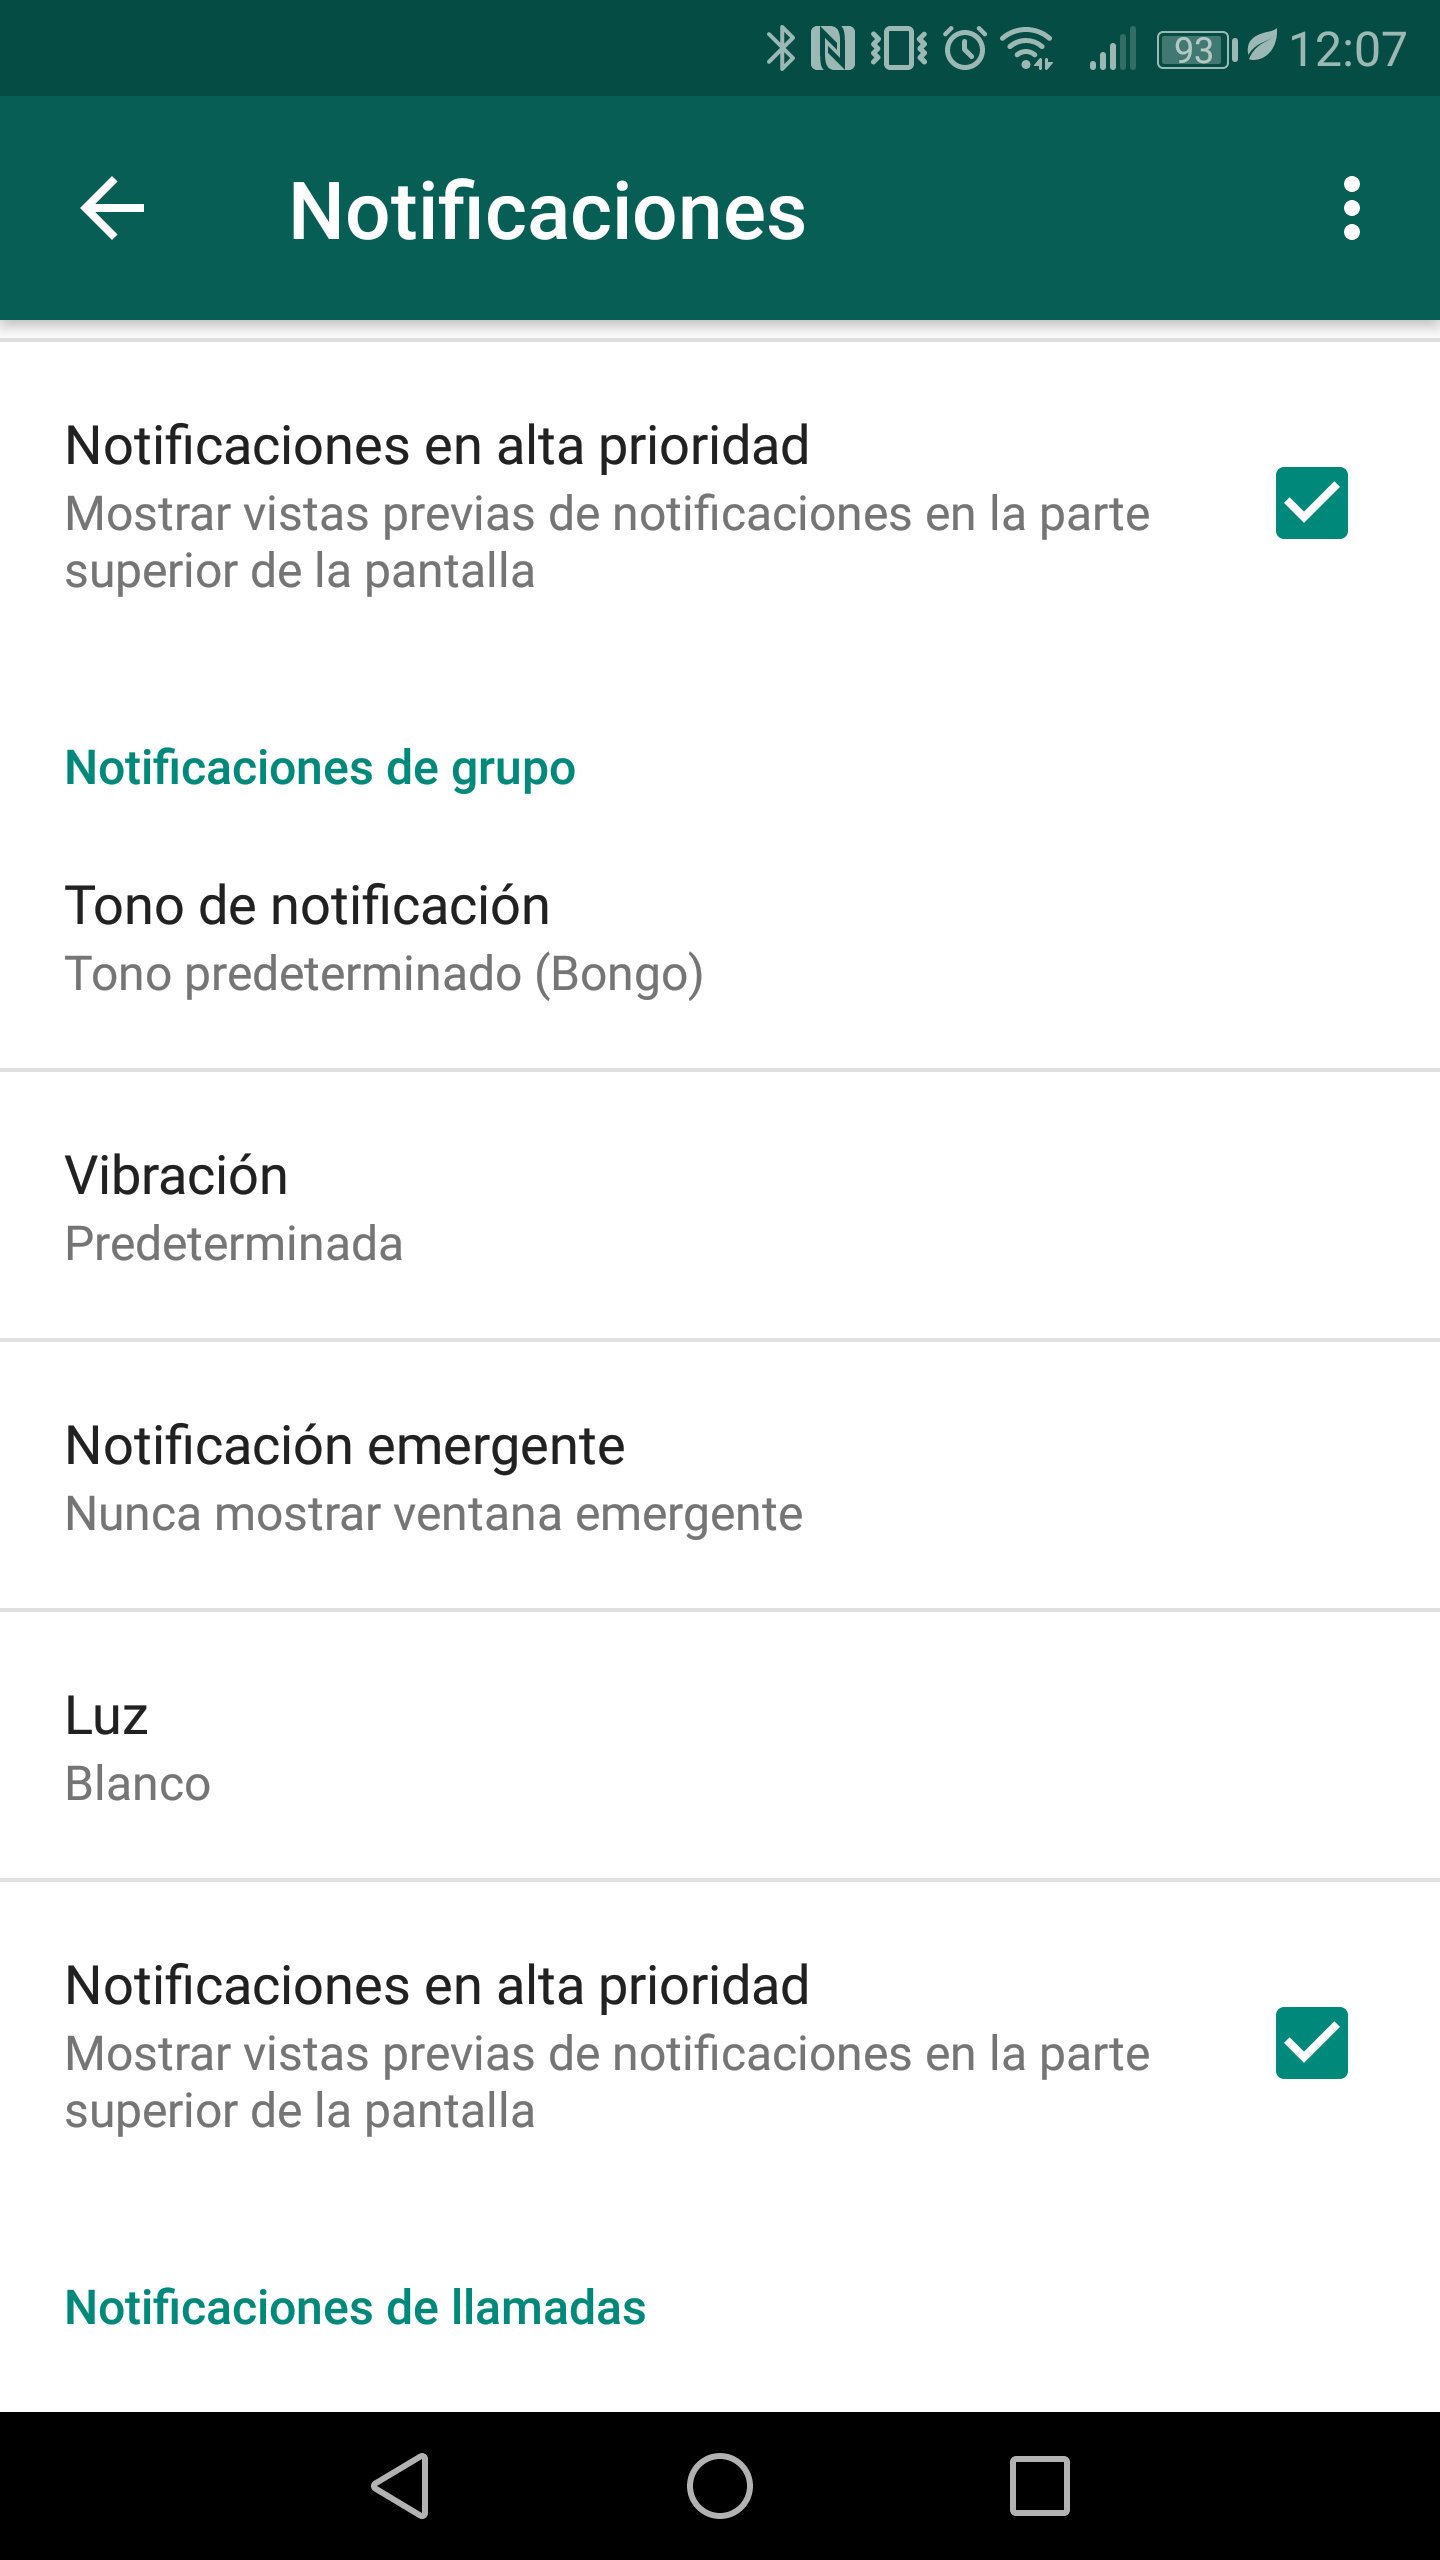 Nueva Función De Whatsapp Notificaciones De Alta Prioridad 6900